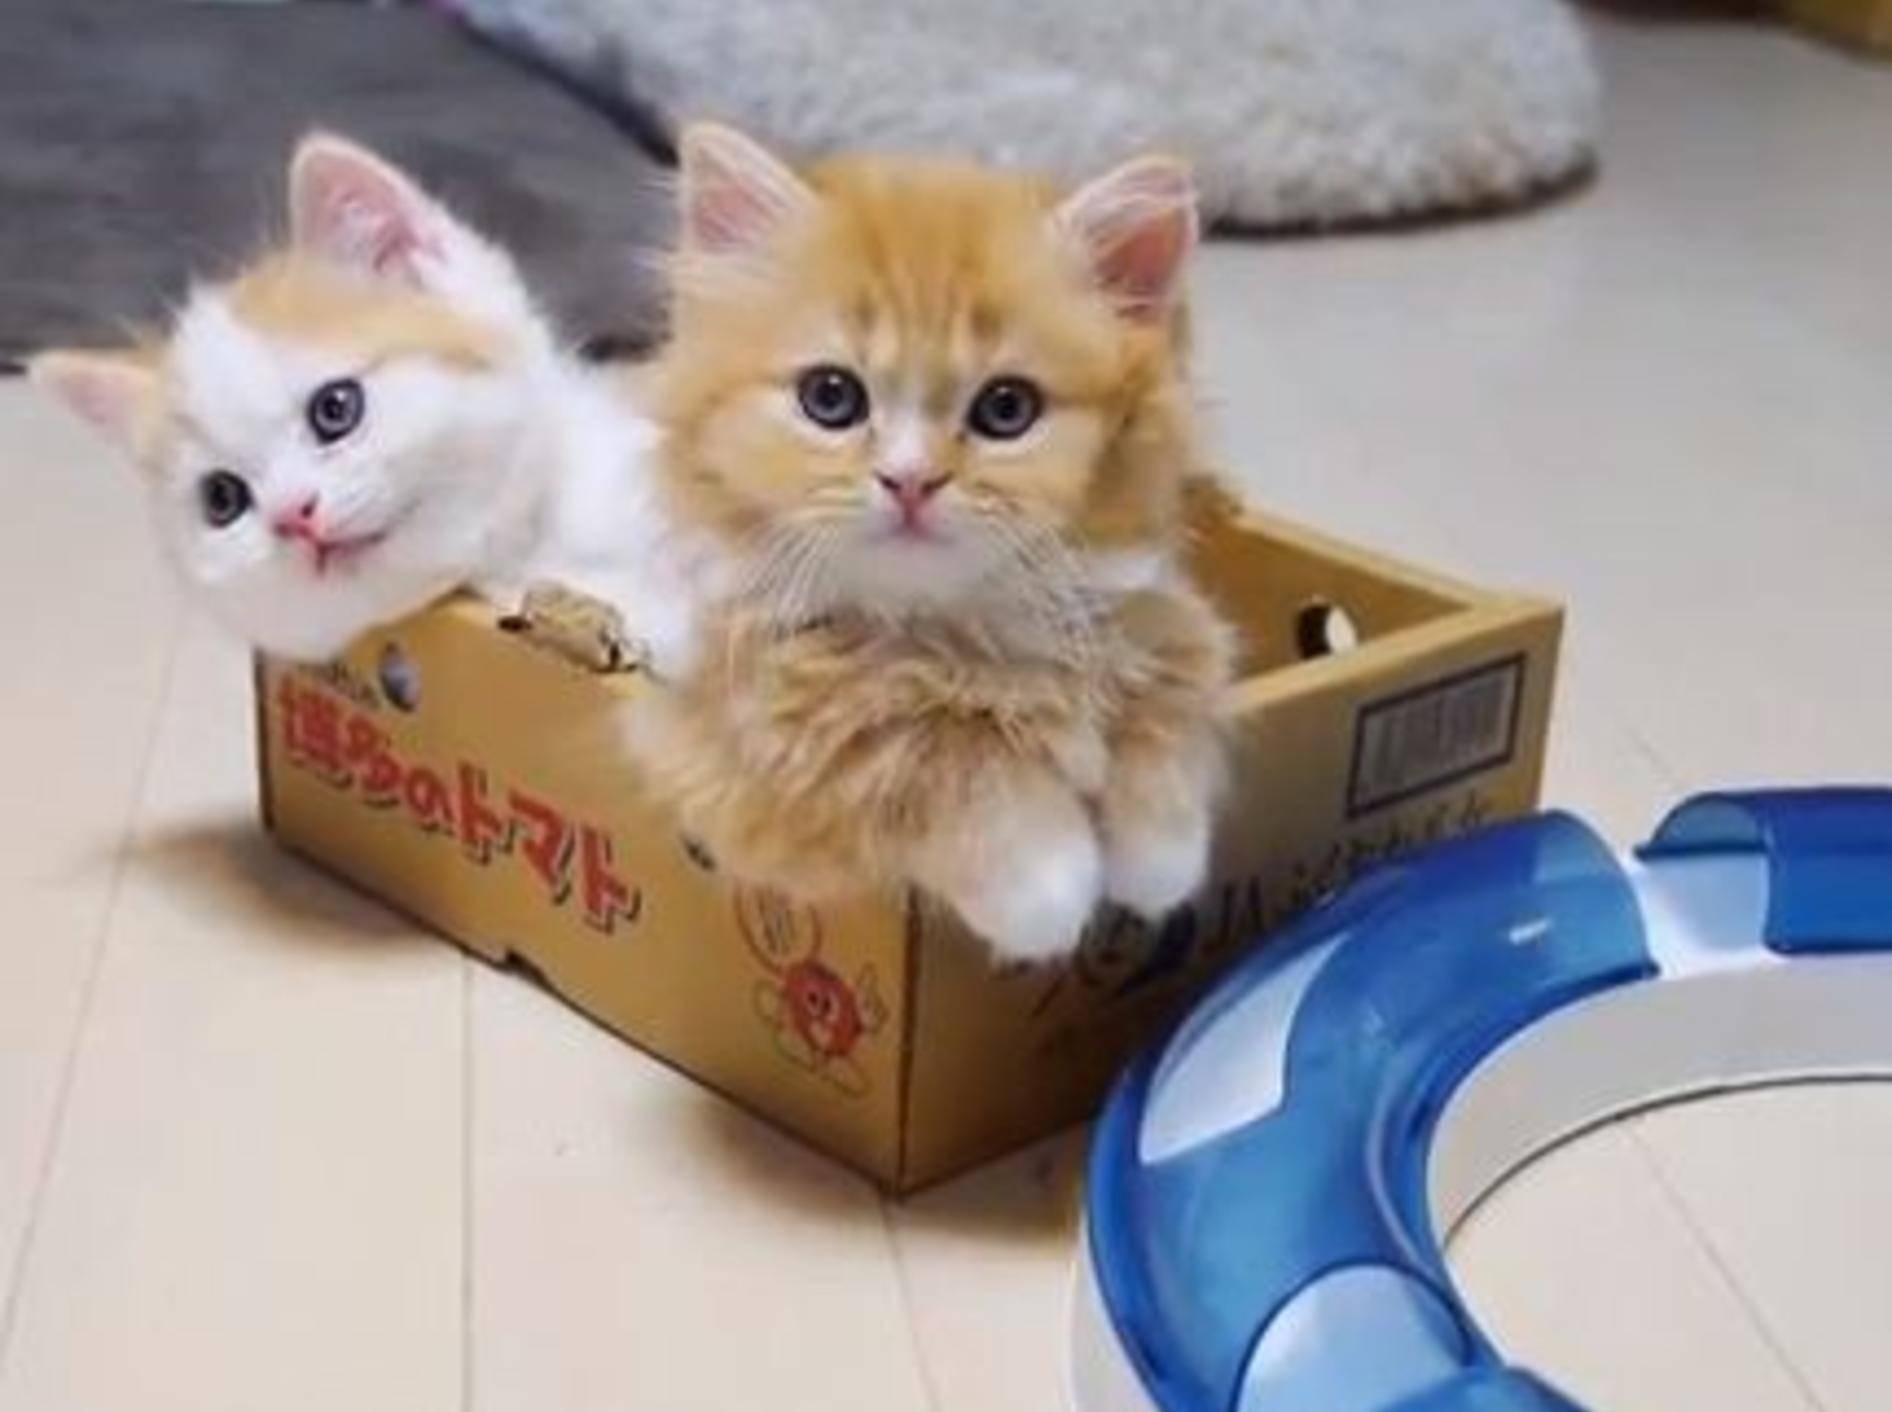 Die roten Babykatzen hsaben es sich im Karton gemütlich gemacht - BIld: Youtube/ StudioSinga